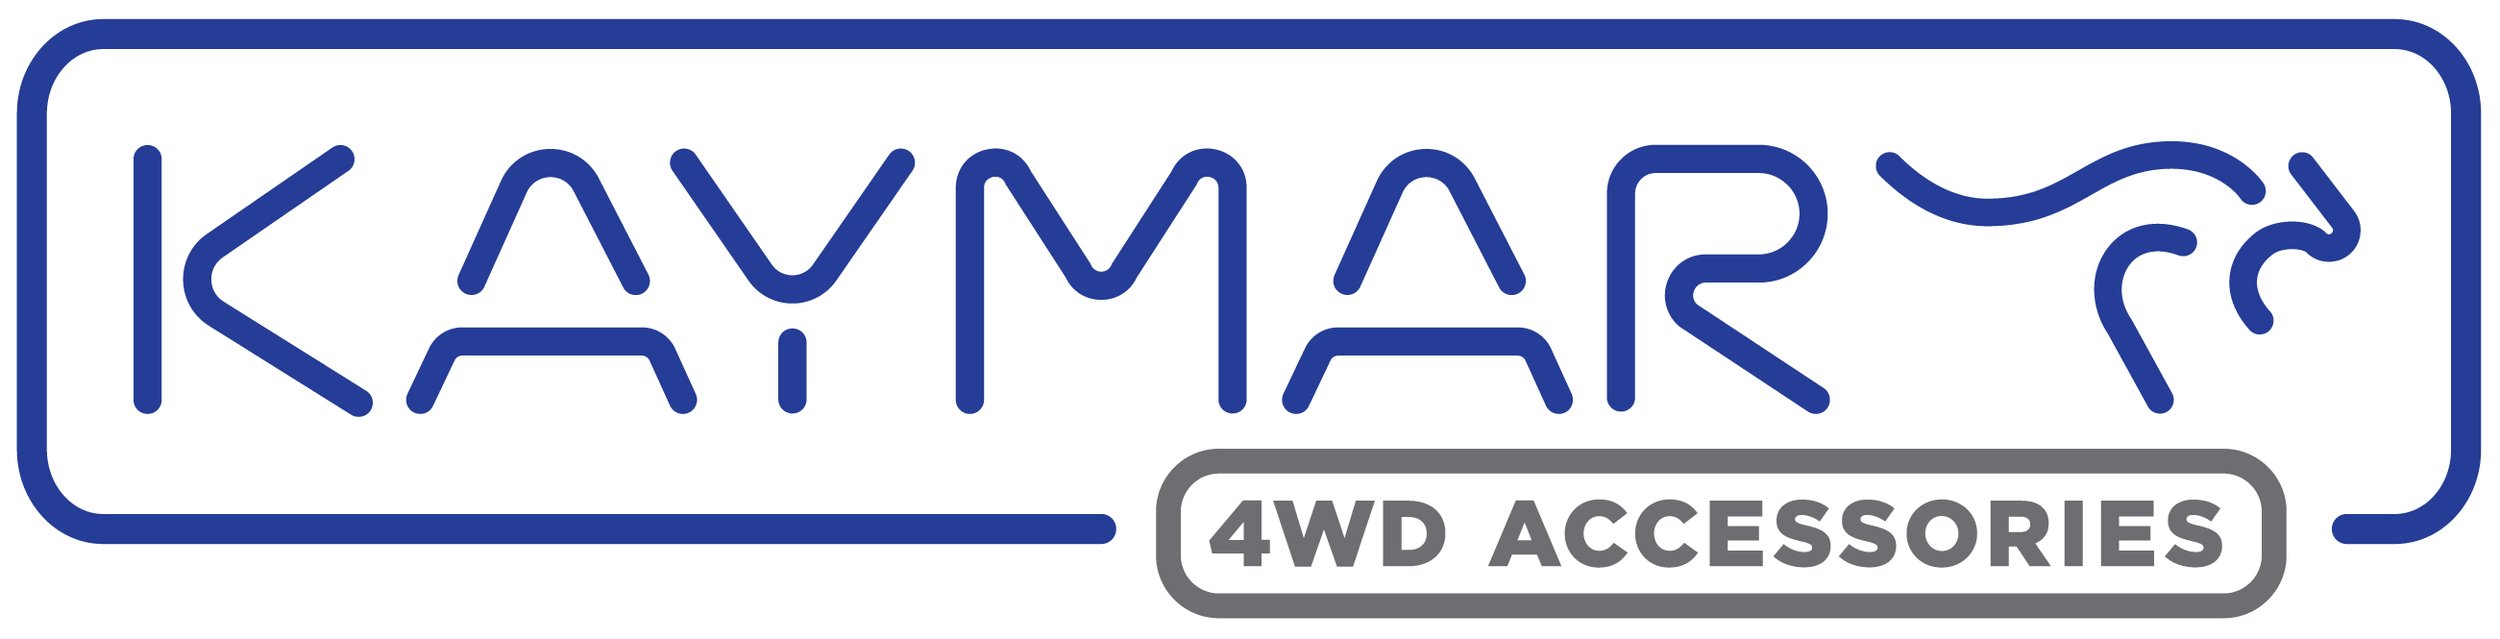 Kaymar Logo.jpg